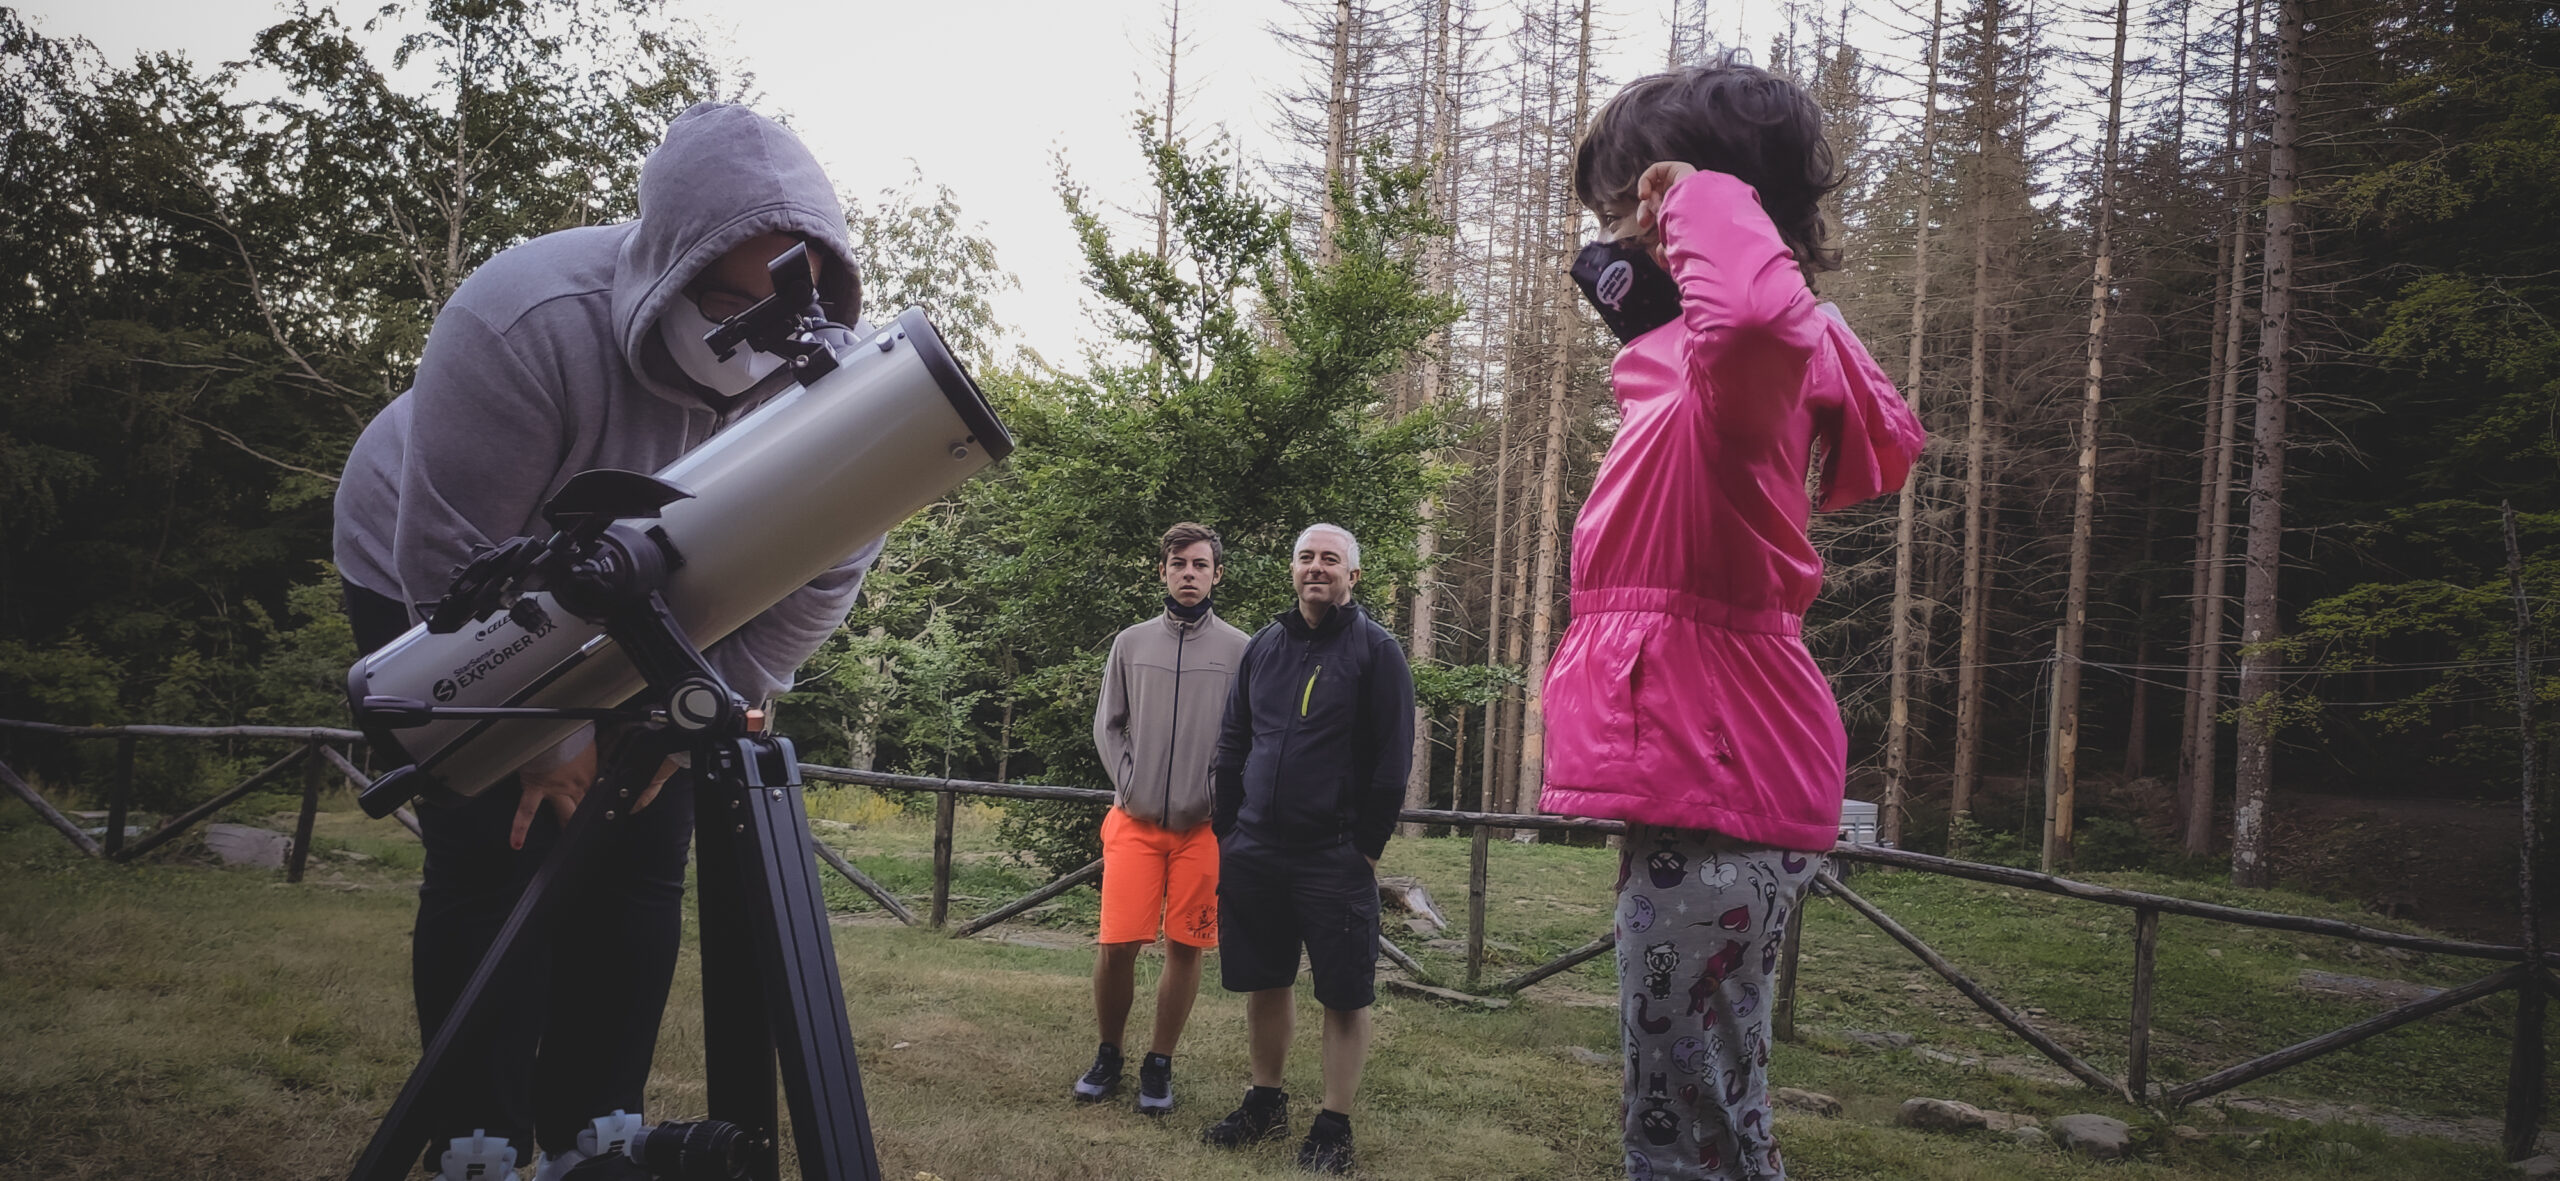 Astronomia e osservazione al telescopio a Capanno Tassoni